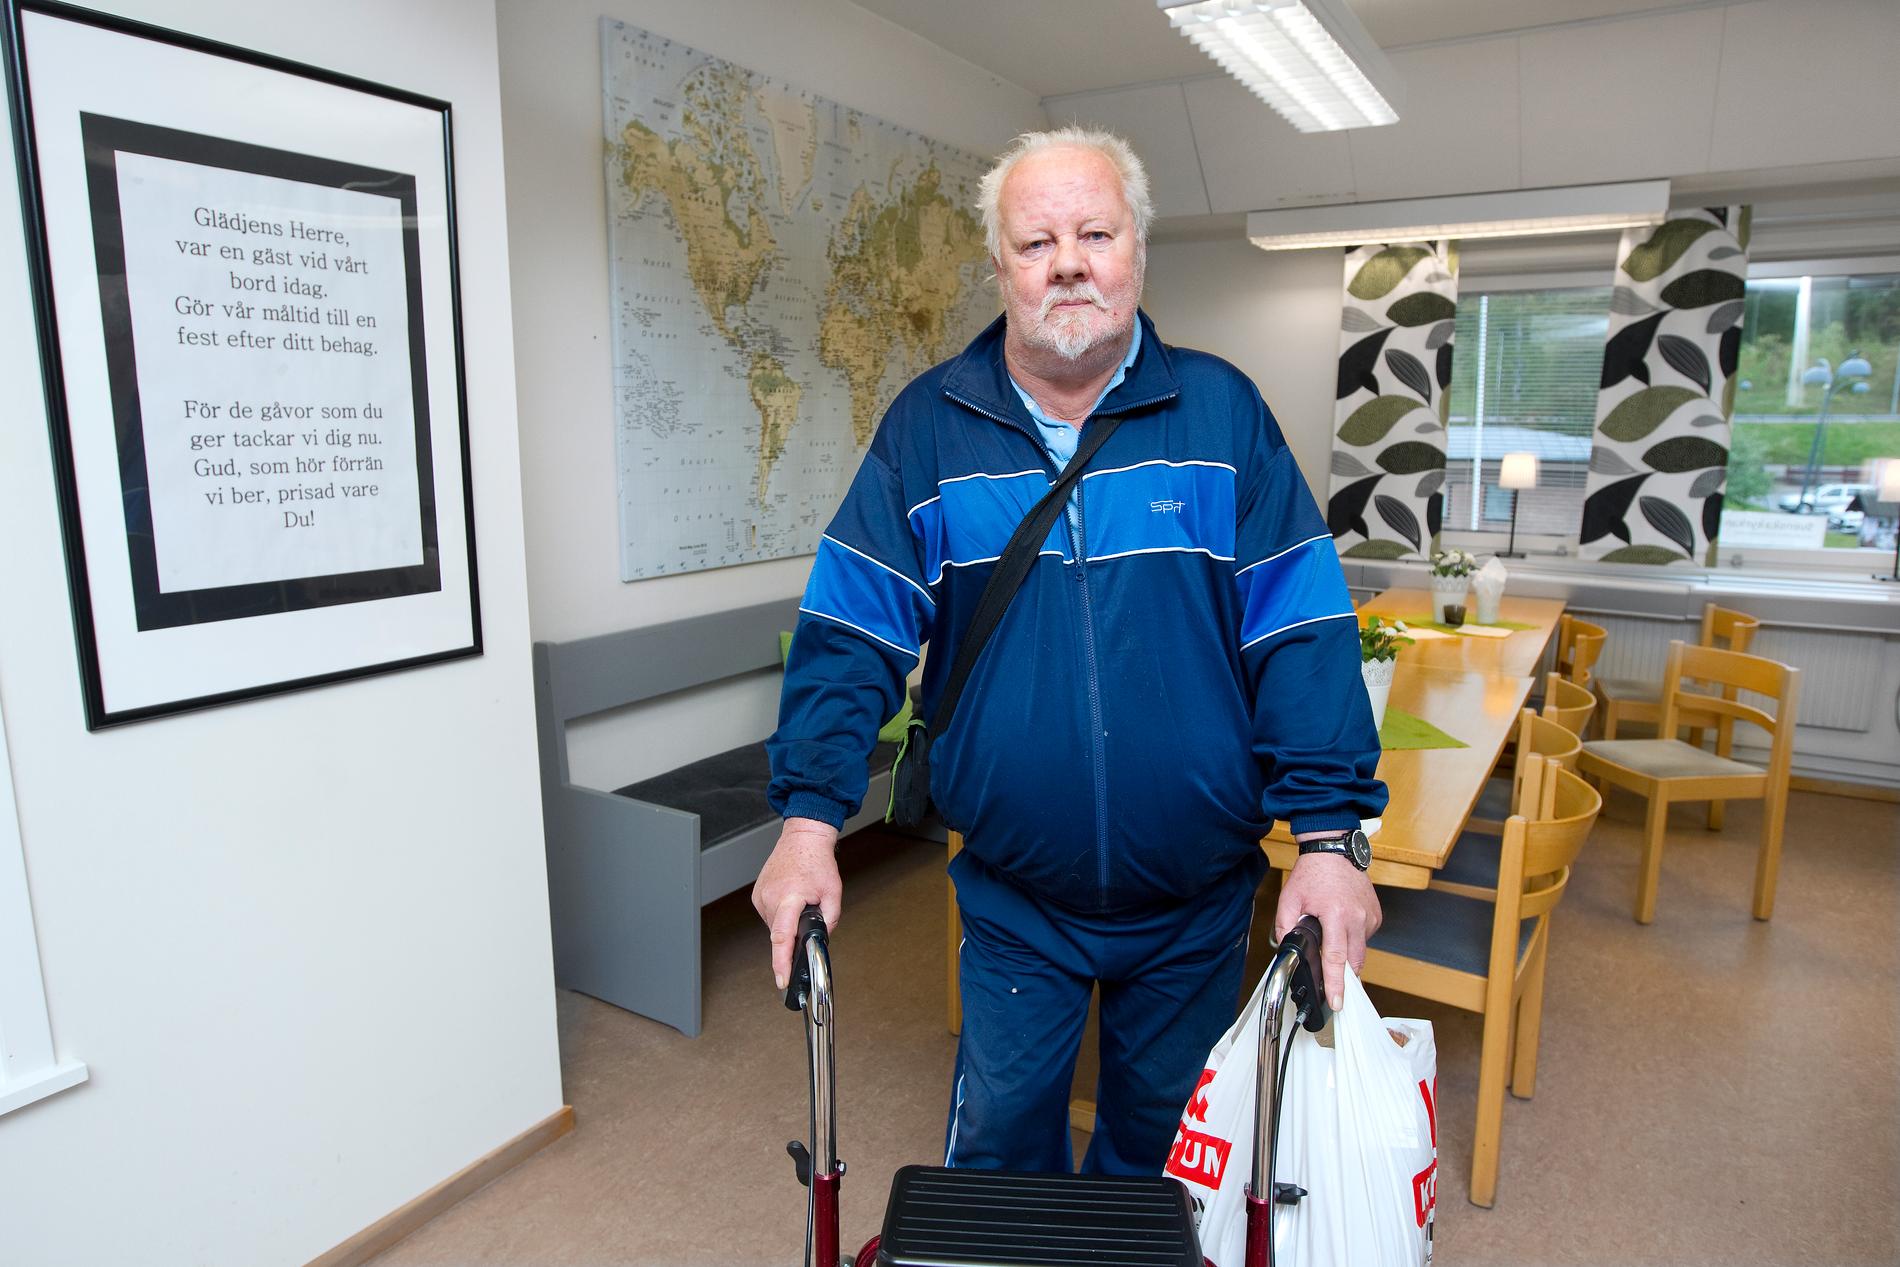 Pensionären Lars-Erik Gulliksson tar tacksamt emot en kasse mat. ”Pensionen räcker inte till så mycket och maten här är väldigt fin”, säger han.